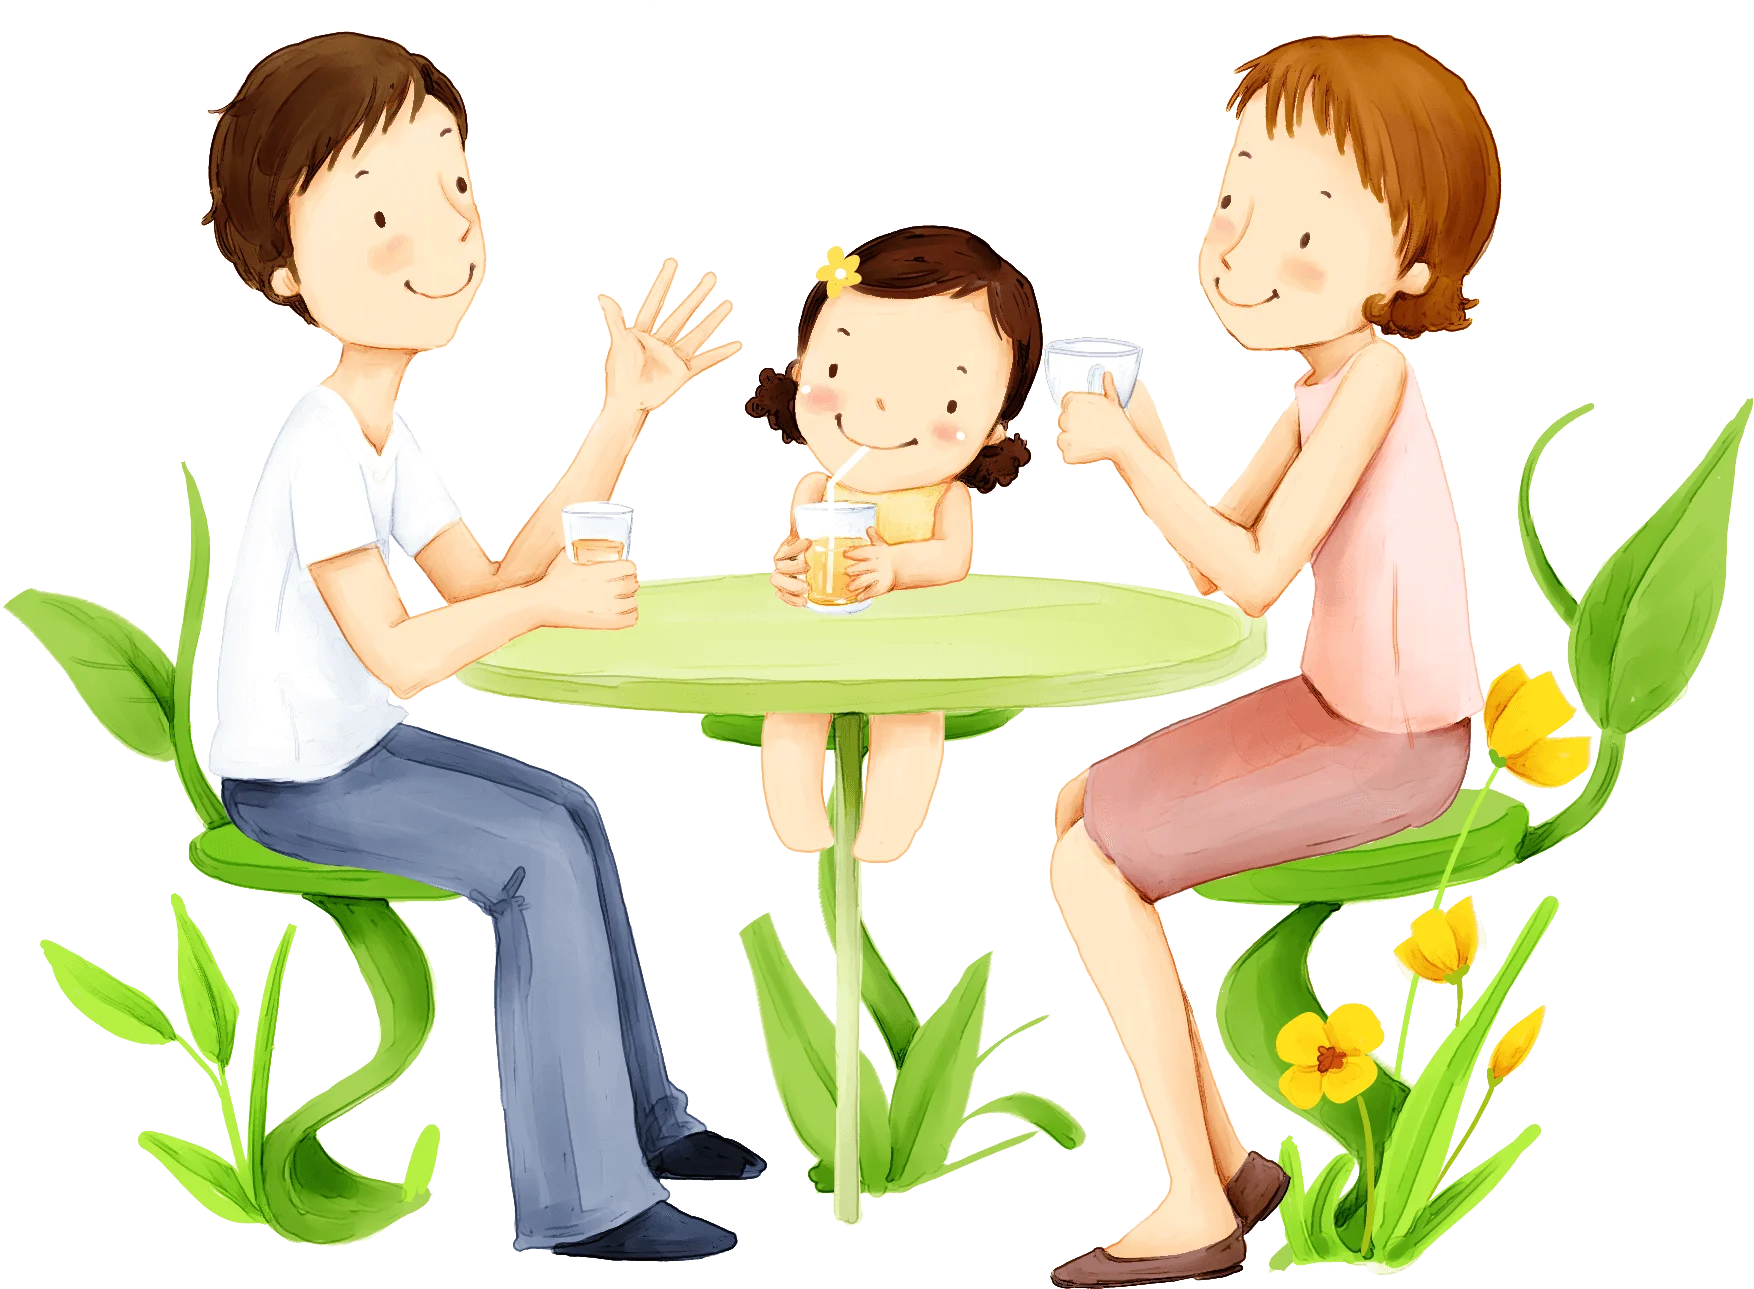 Os hologramas de Maria -  ilustração de um pai, uma mãe e uma filha tomando suco juntos